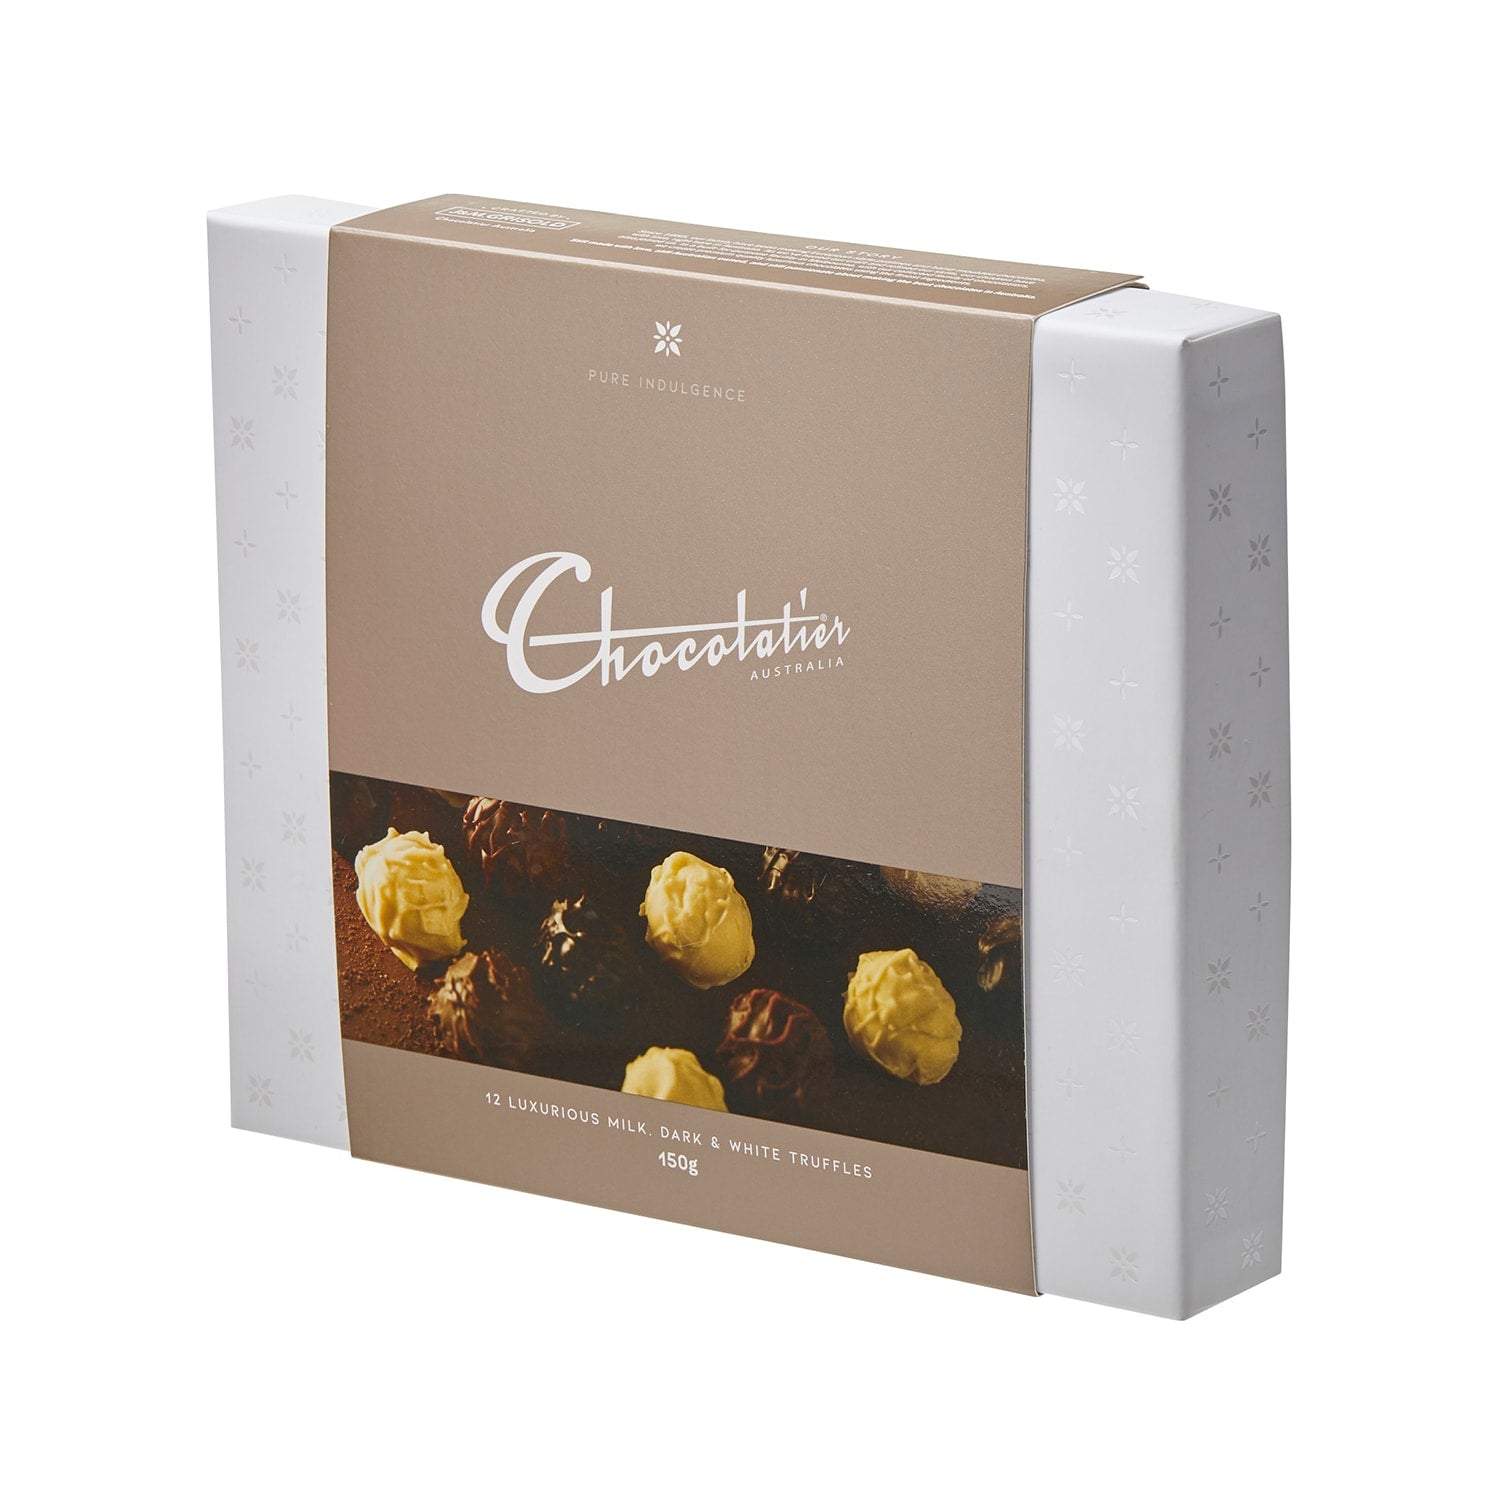 Chocolatier Australia Milk, Dark & White Chocolate Gourmet Truffle Gift Box - 150g